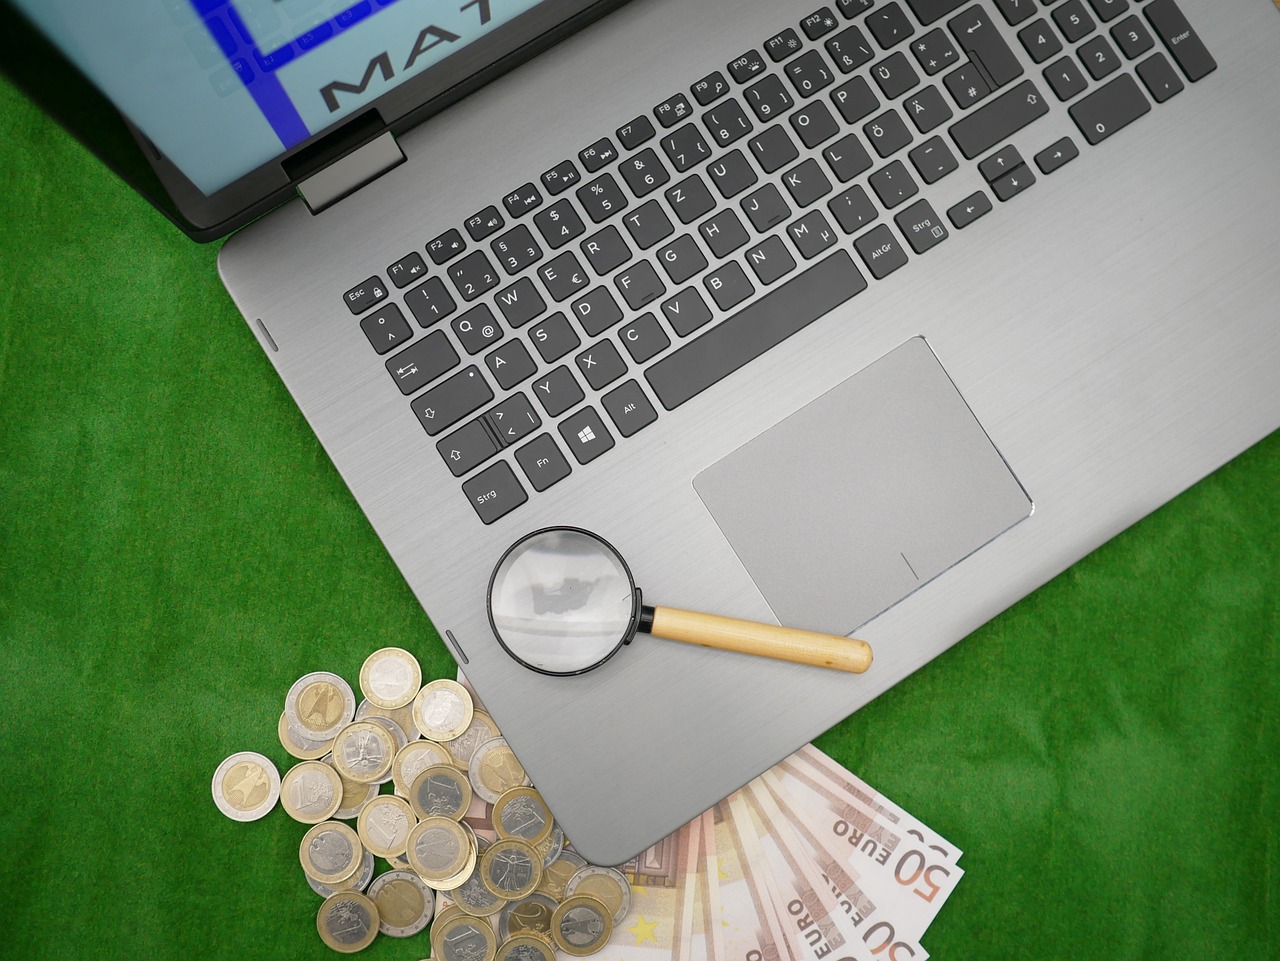 un laptop con una lente d'ingrandimento sulla tastiera, poggiato su un piano verde con alcune banconote e monete